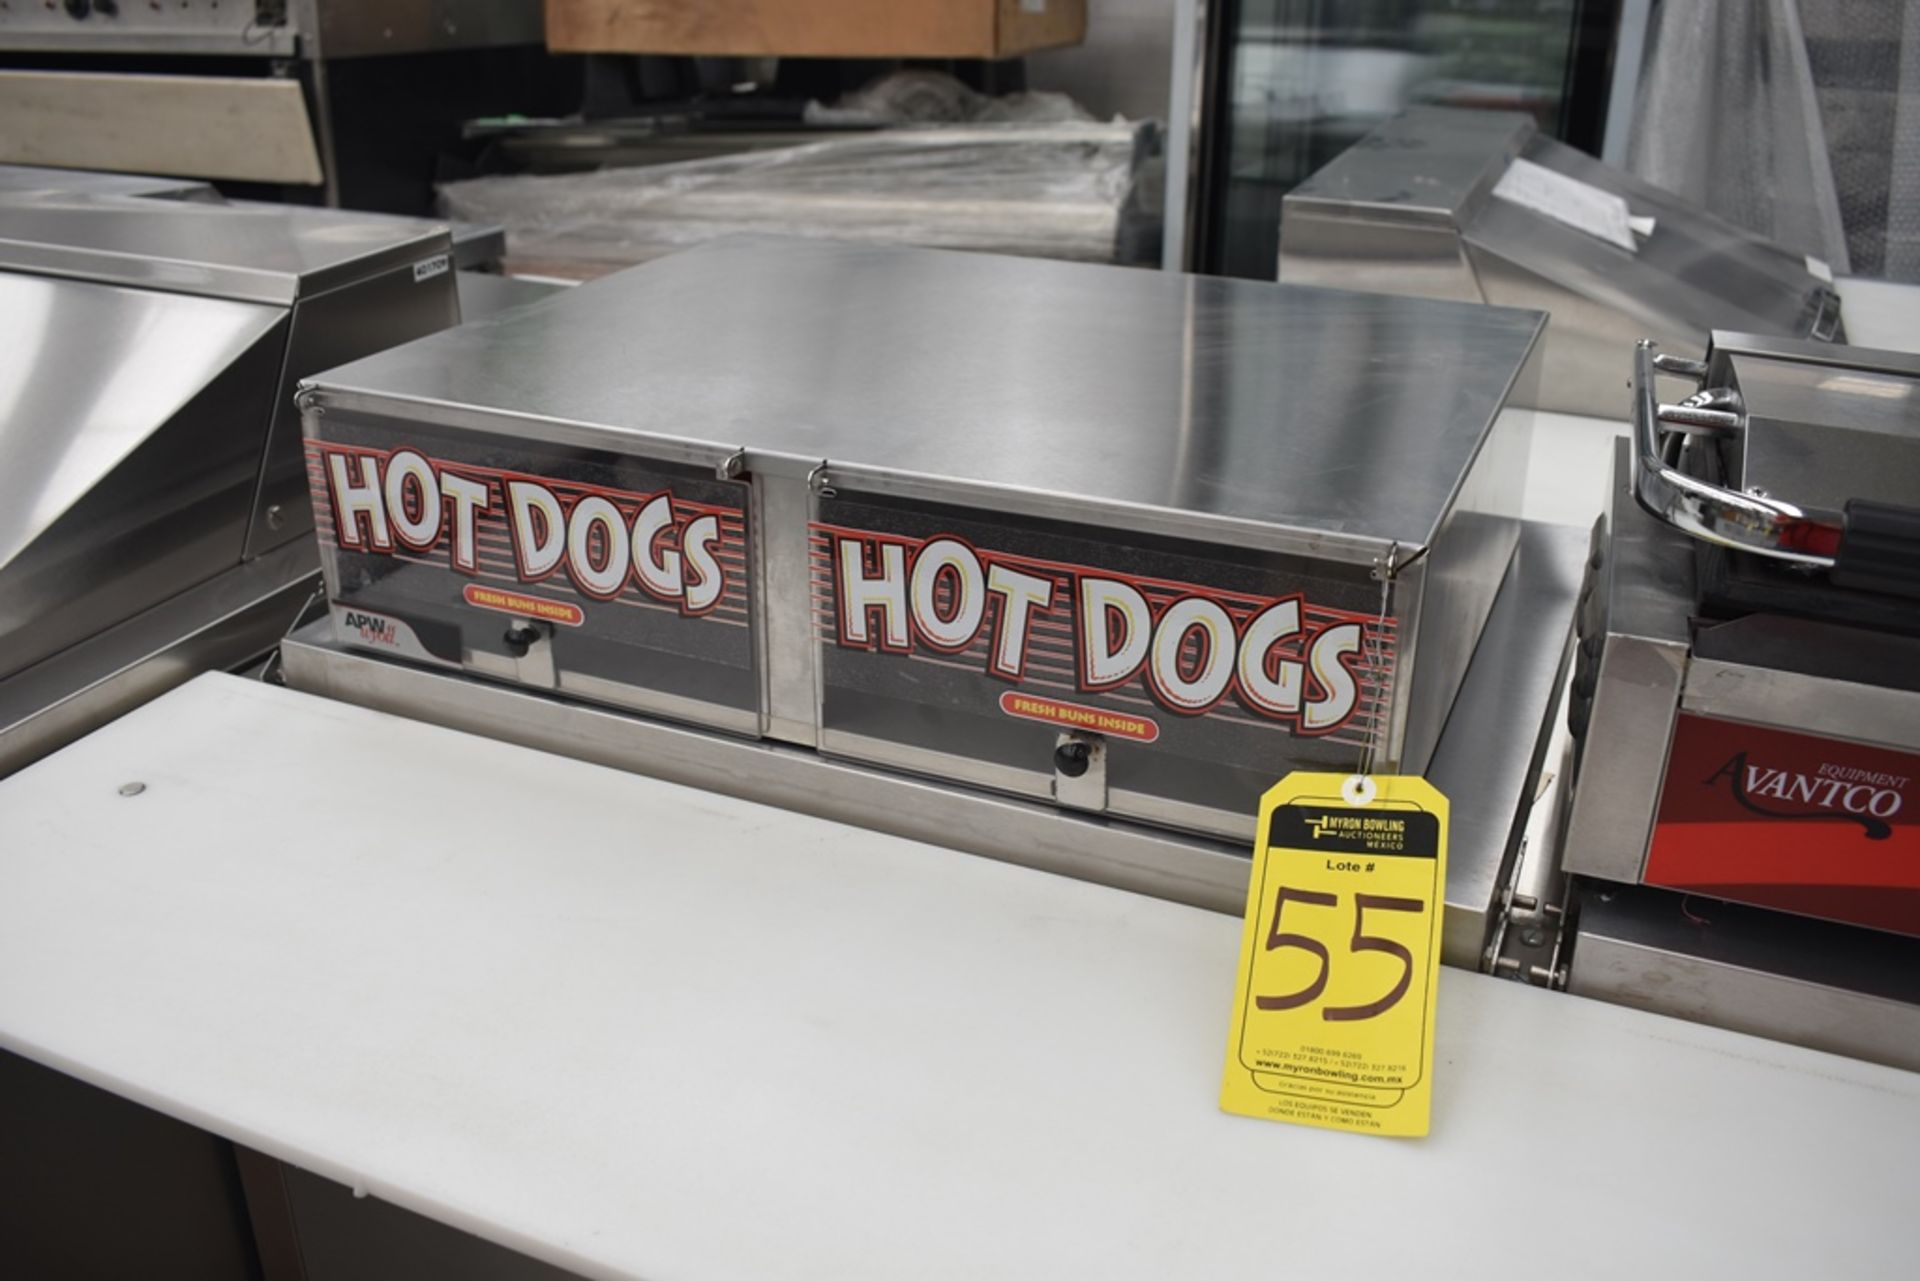 NUEVOS Roller Para Salchicha De Hot Dog eléctrico (Hot Dog Grill) Marca Kreppsland, Modelo Cz-9,110v - Image 11 of 27